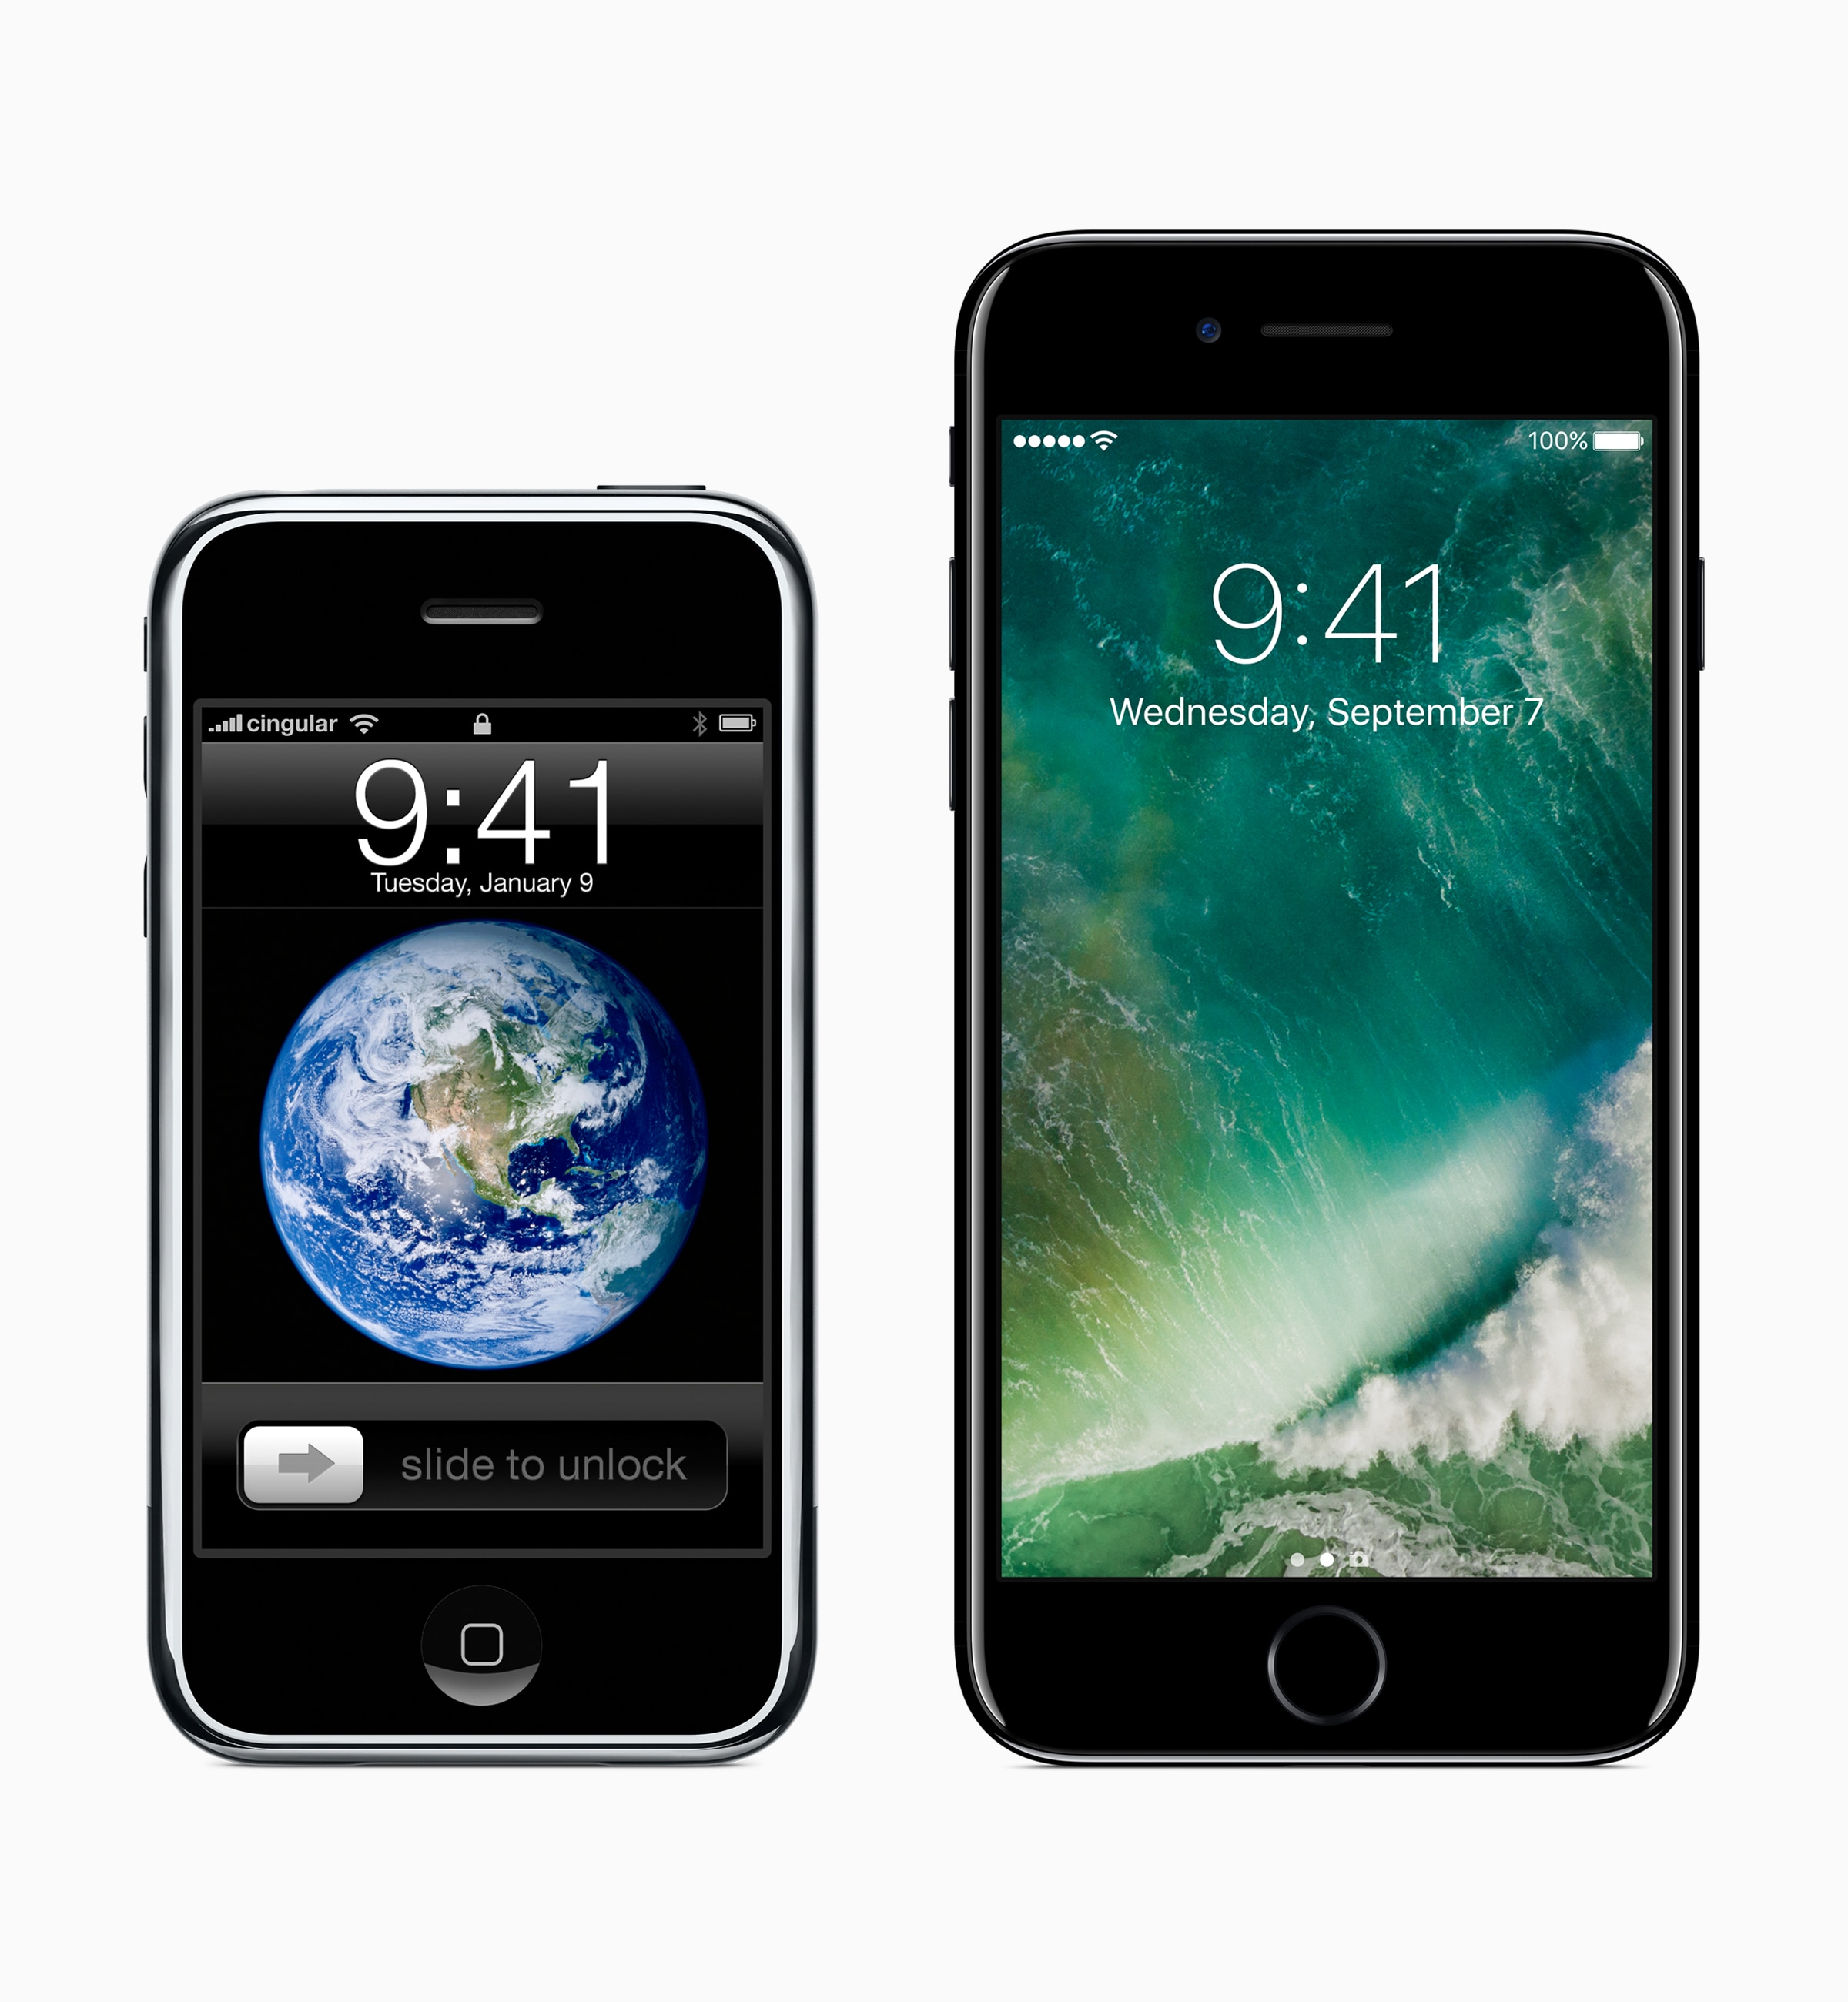 iPhone original e iPhone 7 lado a lado